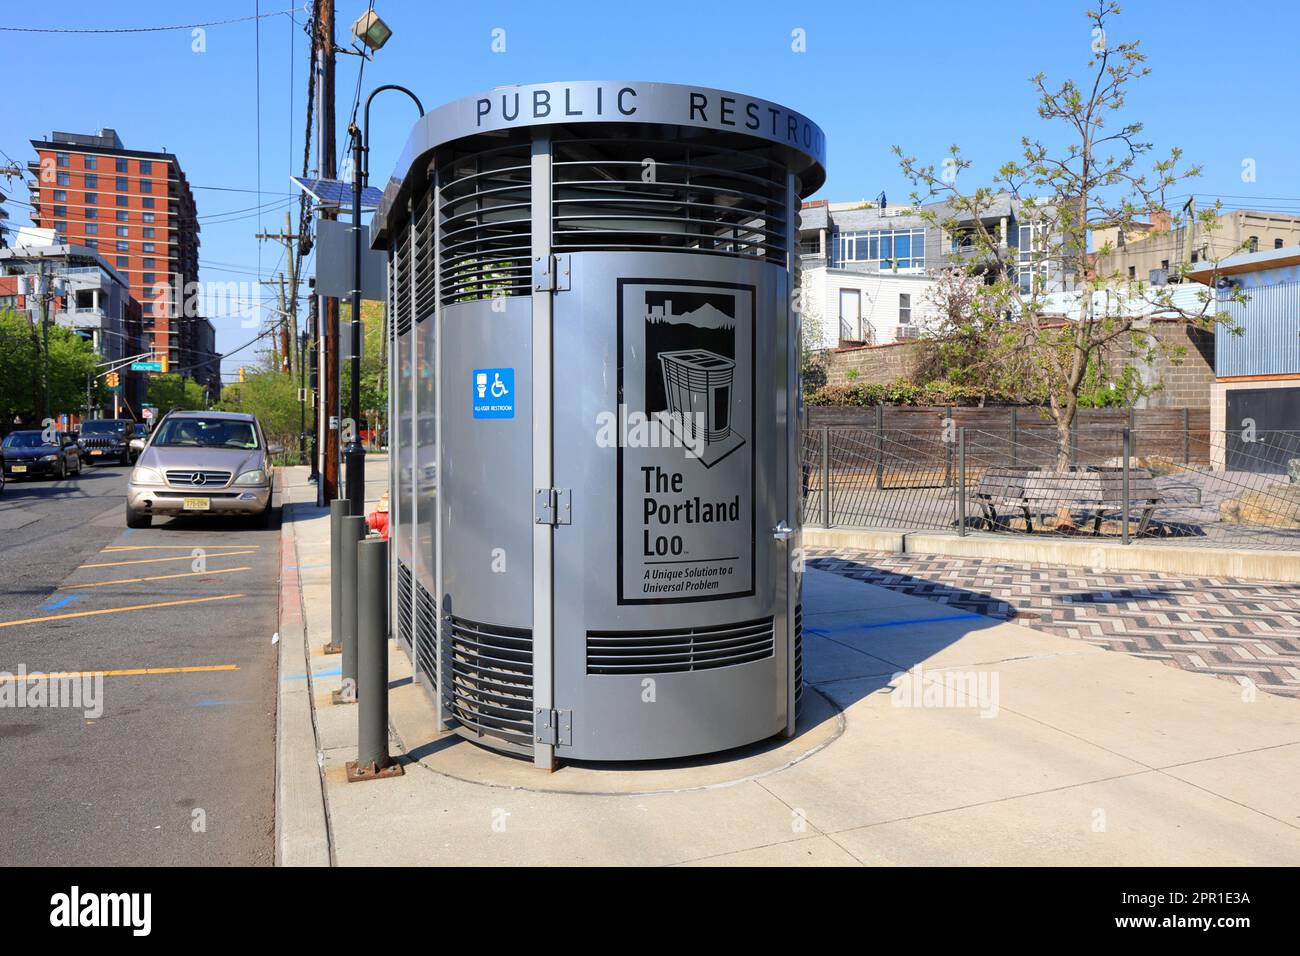 Une Loo de Portland au Southwest Resiliency Park, Hoboken, New Jersey. Une toilette publique de base, sans fioritures, fabriquée à Portland, Oregon. Beaucoup de villes ont Banque D'Images